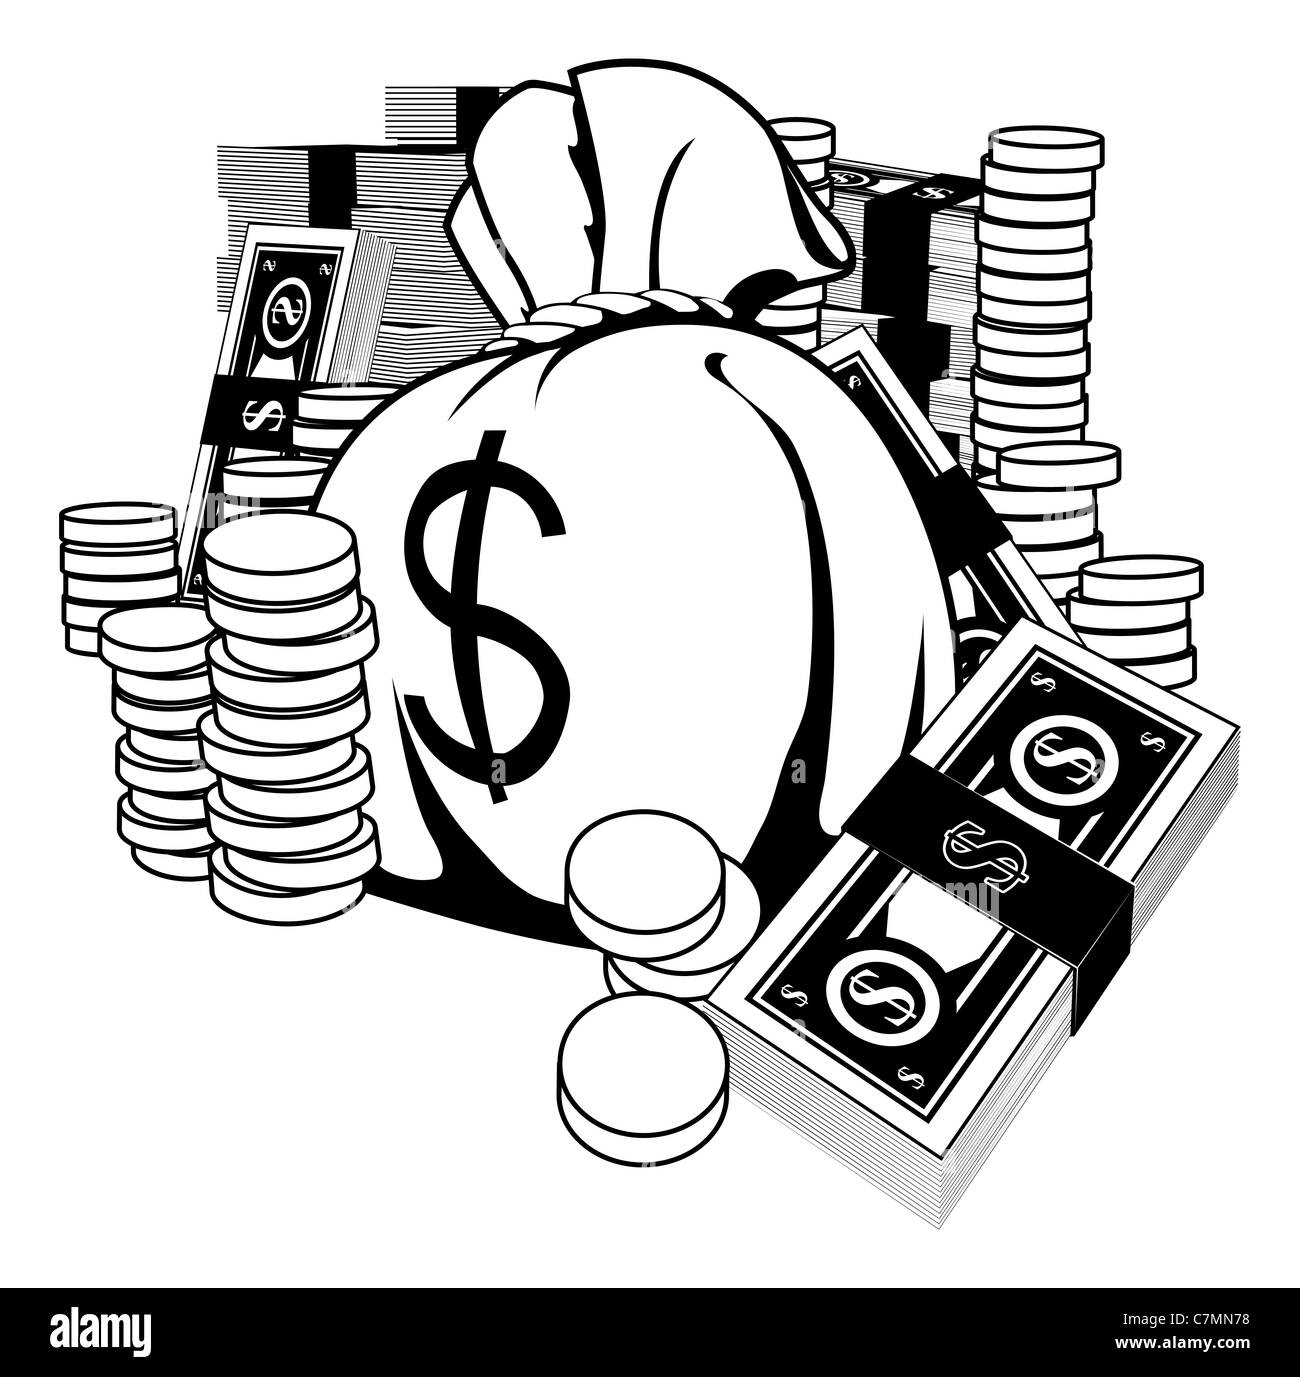 Monochrome Darstellung von Geld in Form von Bargeld und gold-Münzen, mit viel Geld Sack. Stockfoto